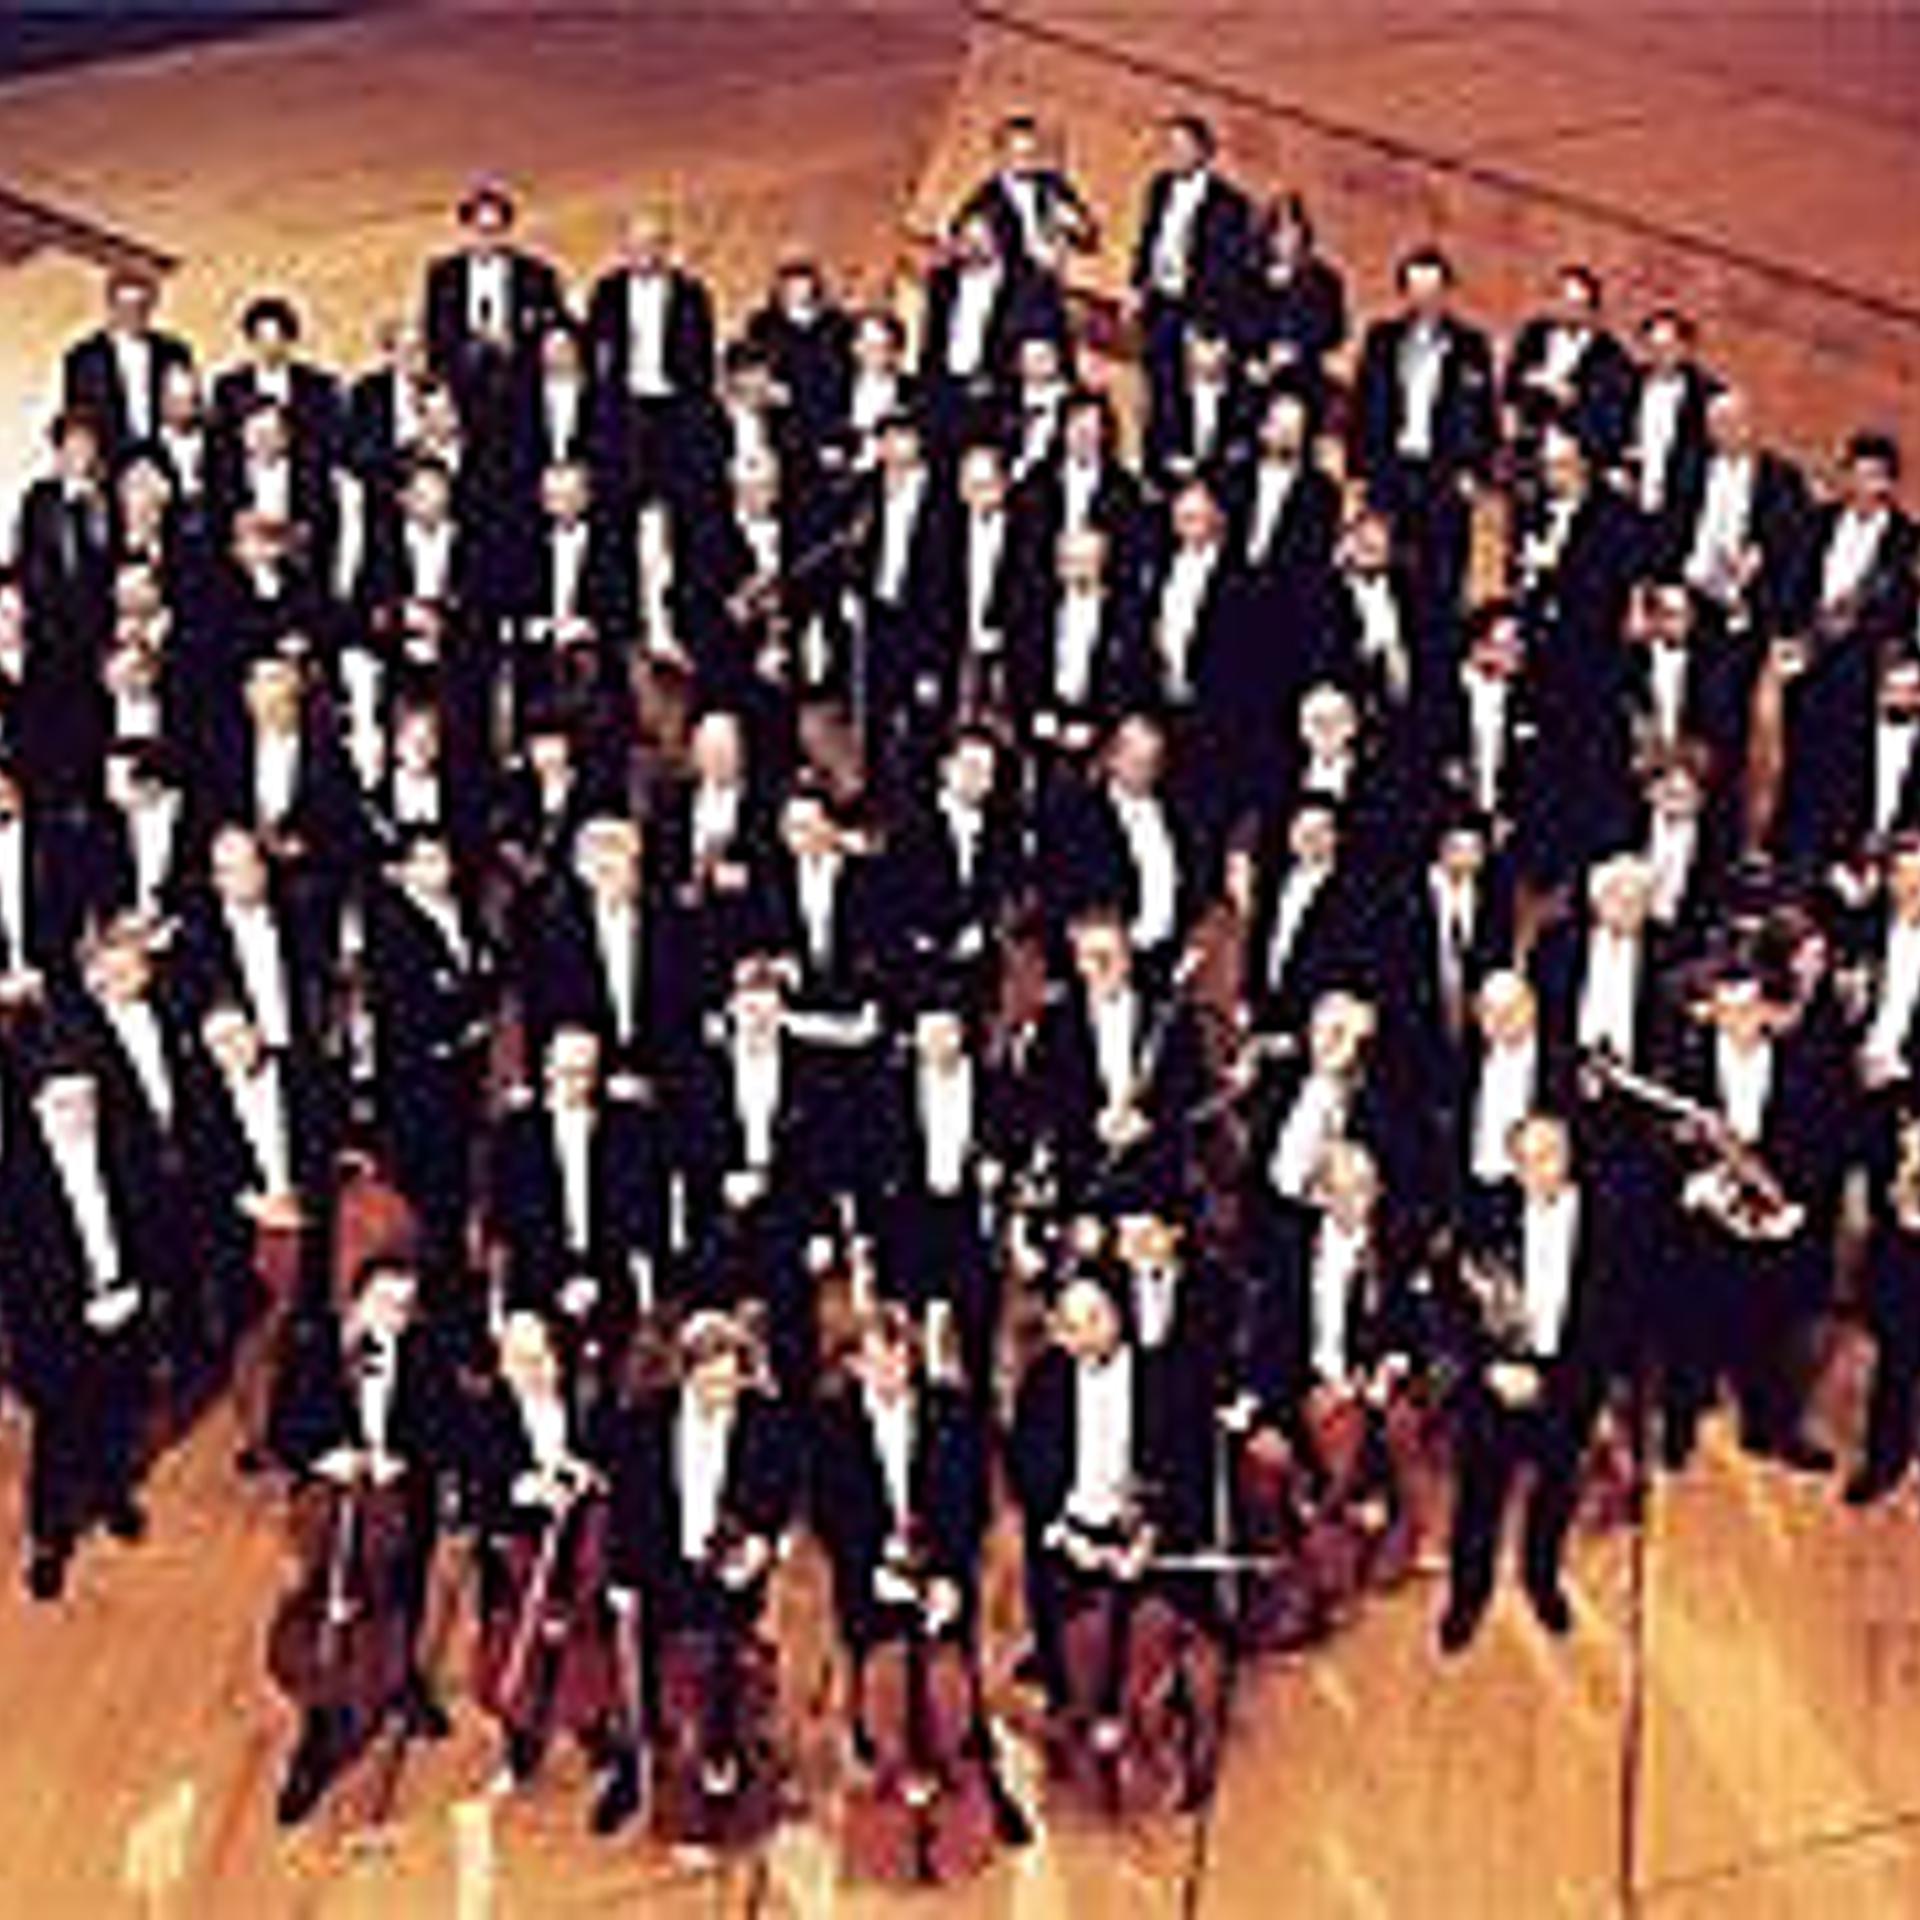 Symphonieorchester des Bayerischen Rundfunks - фото